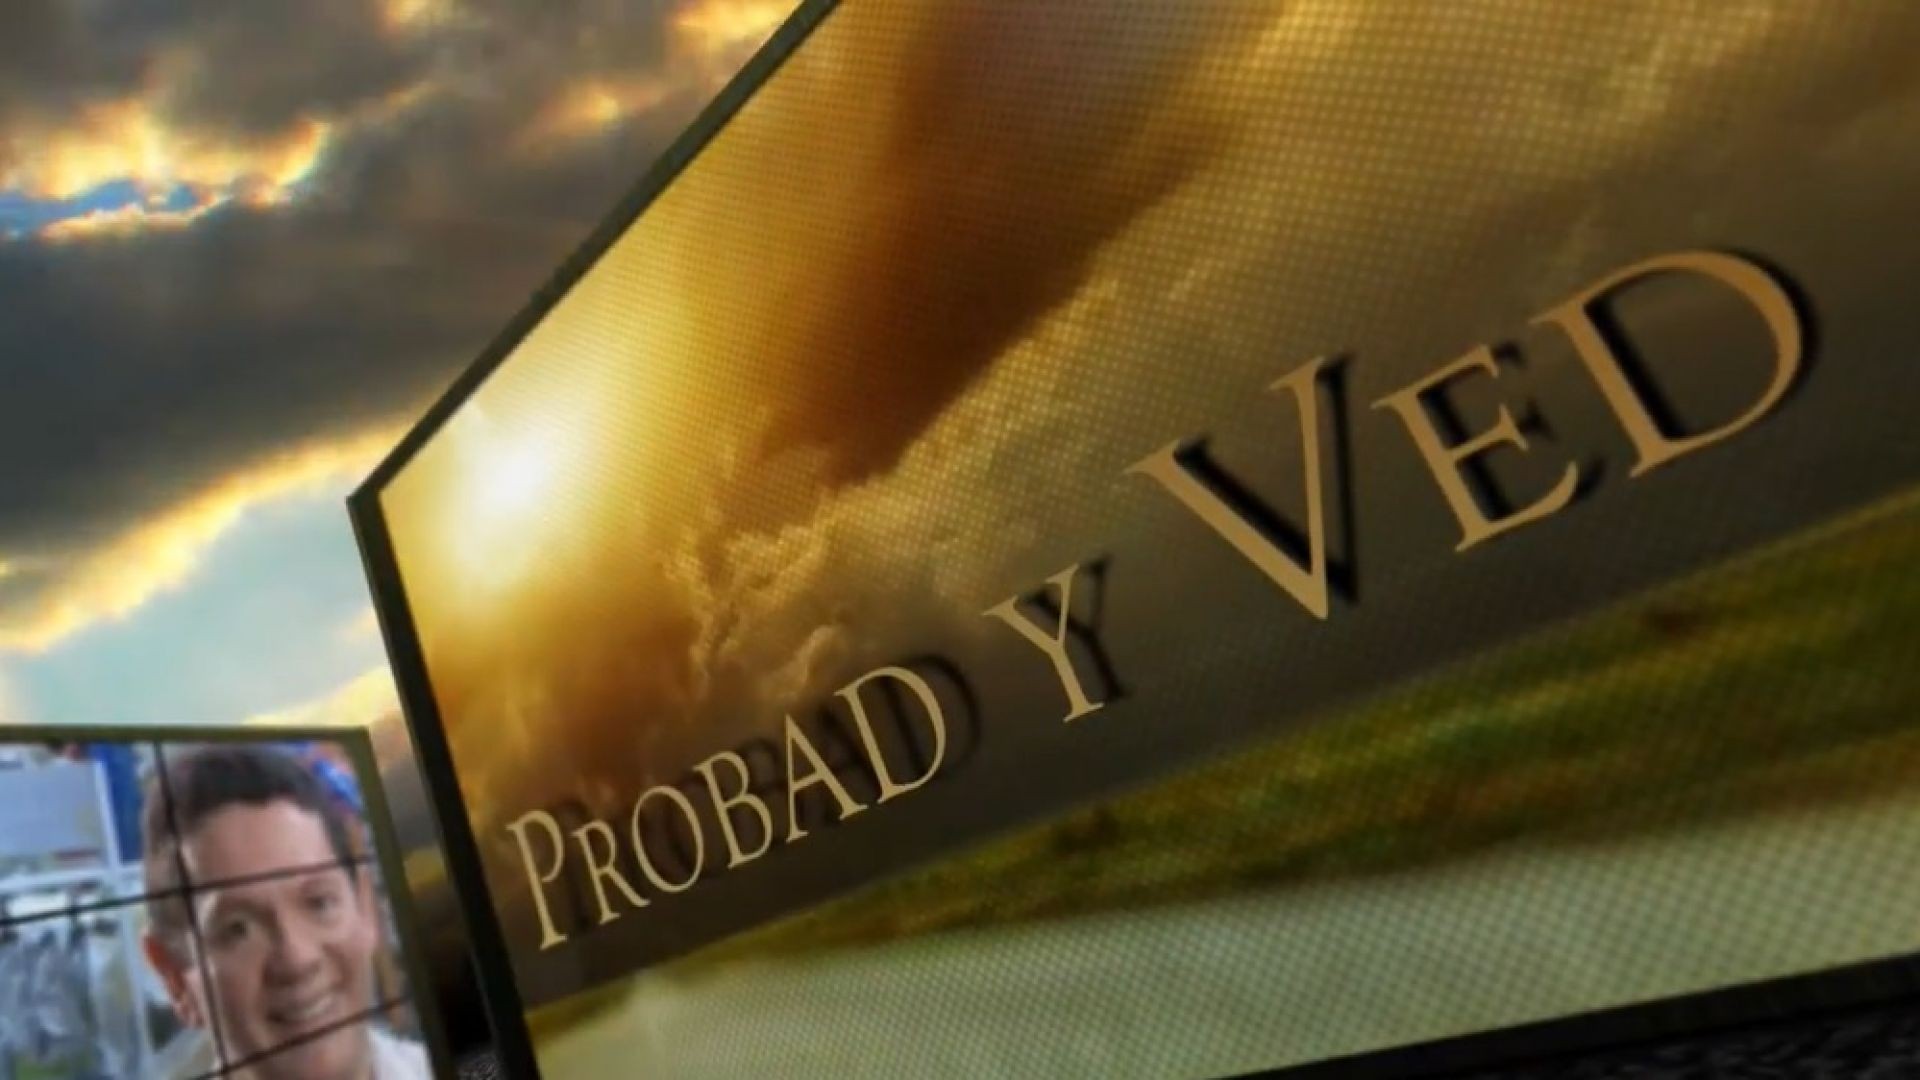 Probad y Ved 2013 - El desafio 8x40 - 1/Jun